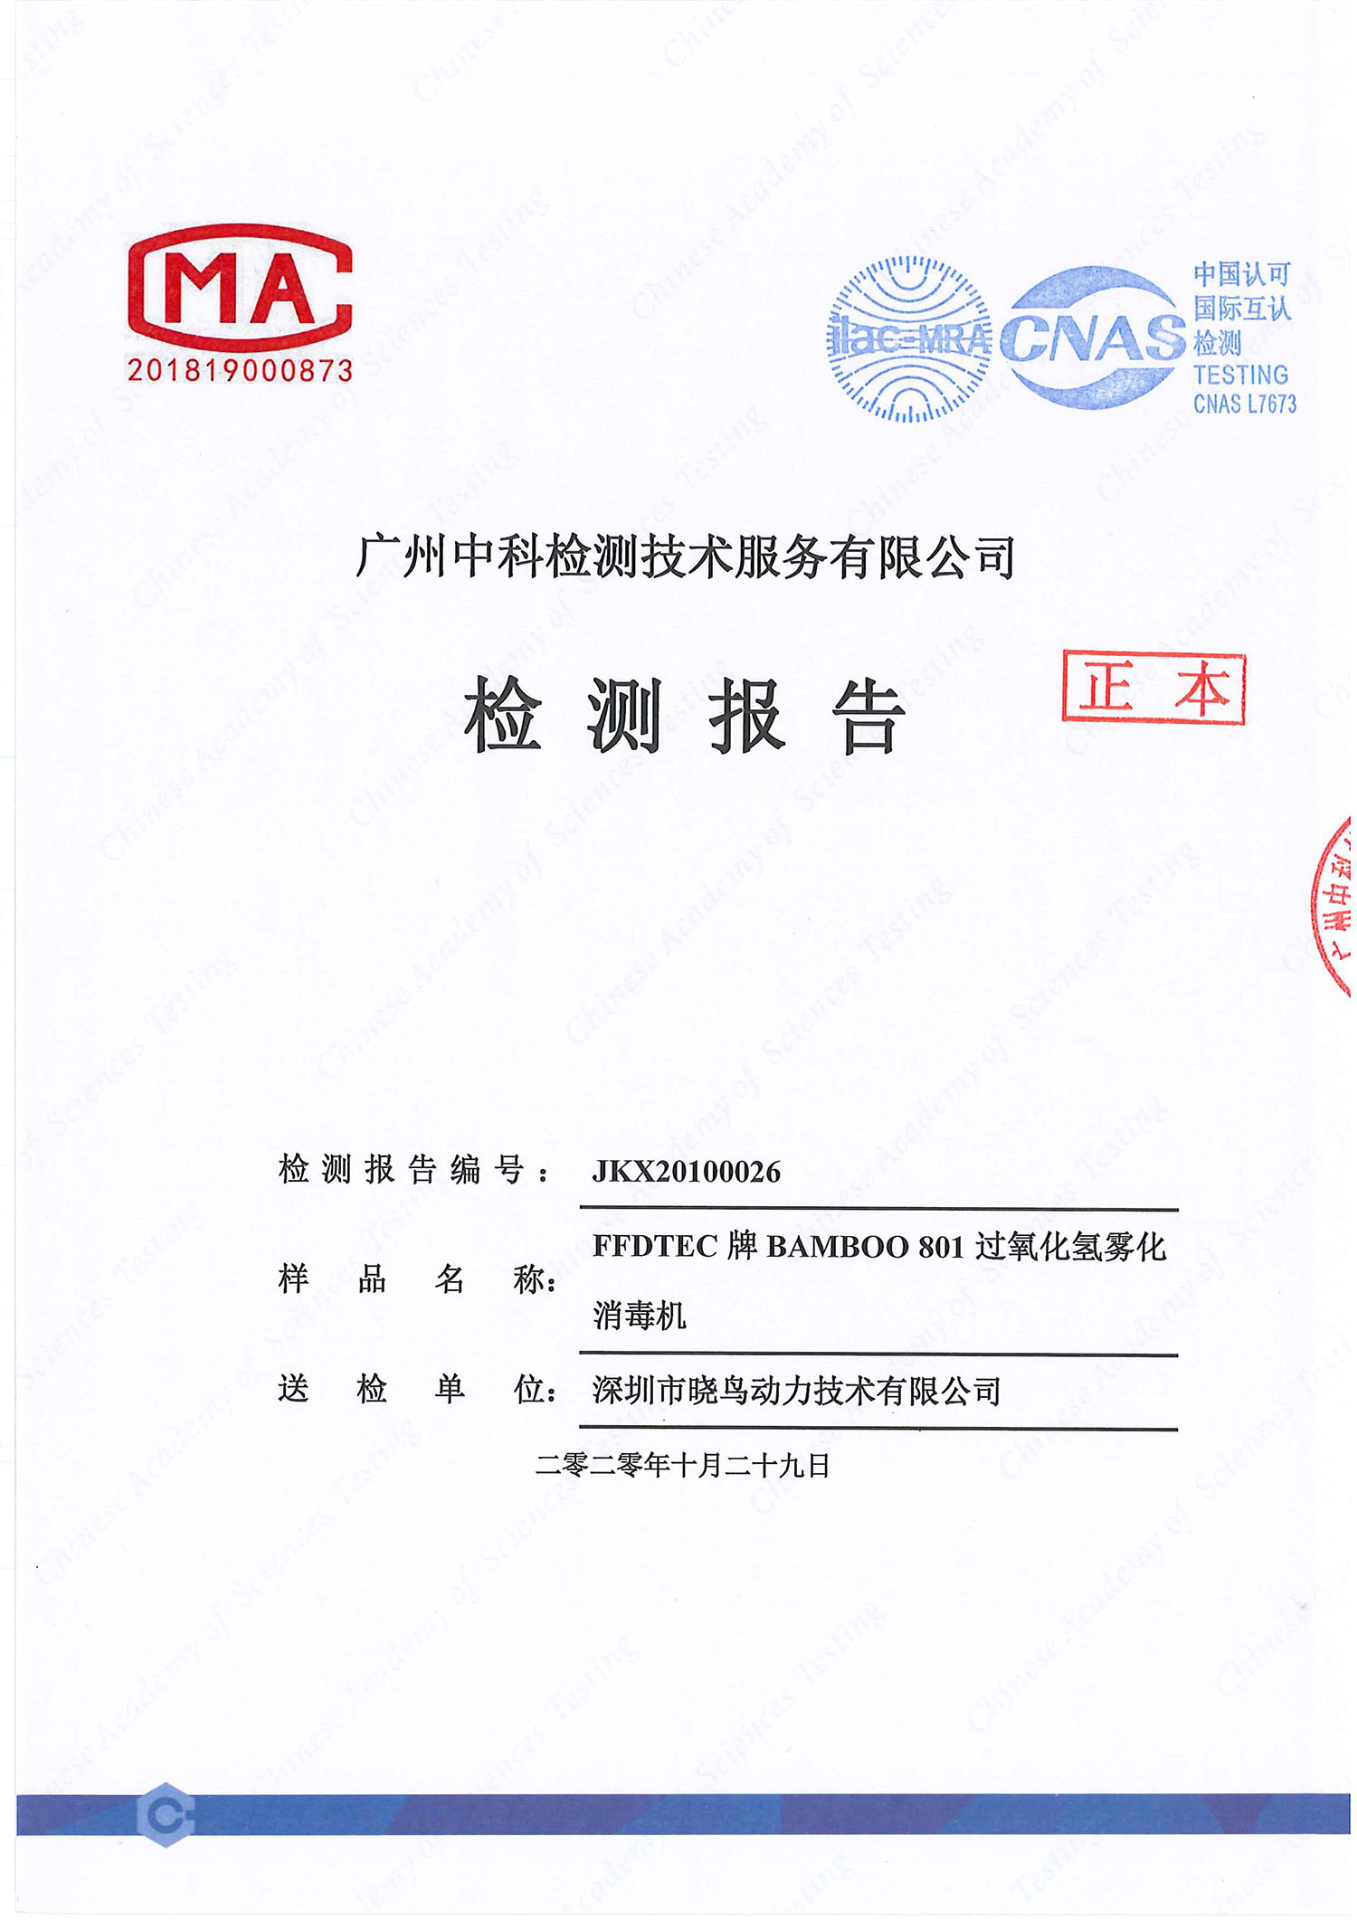 过氧化氢灭菌器2.7克每立方米LOG6实验报告中文